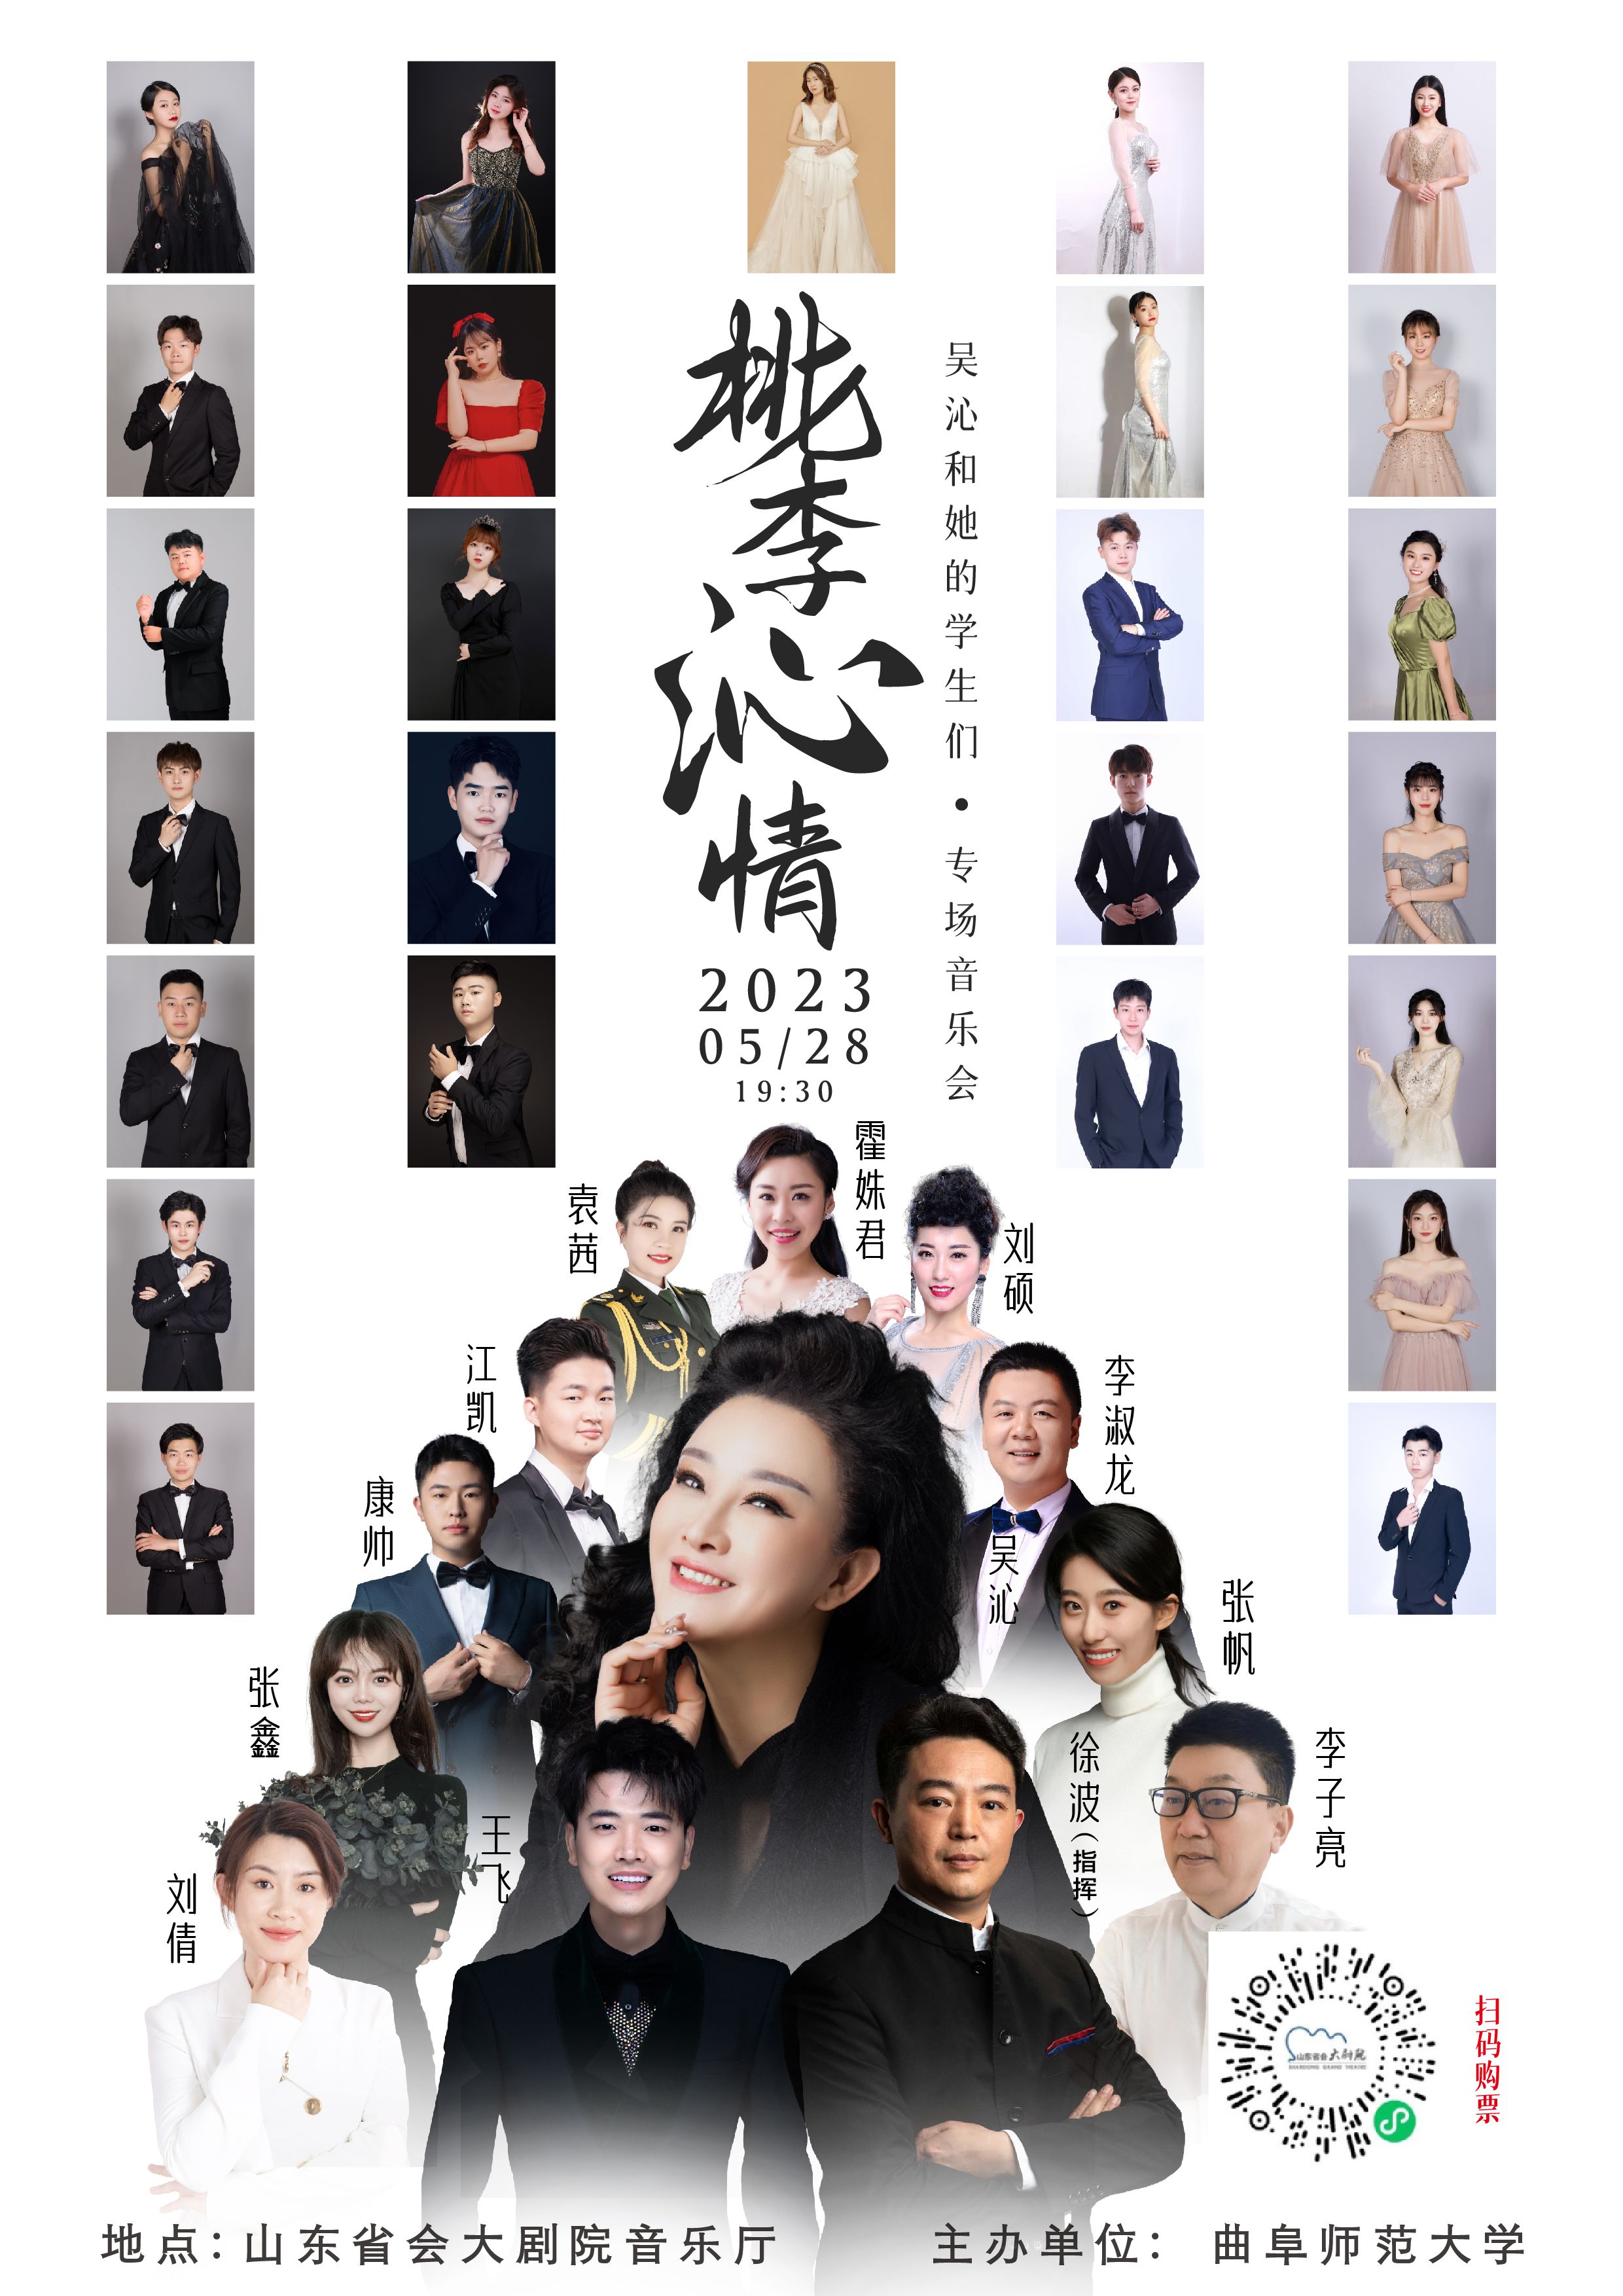 “桃李沁情——吴沁和她的学生们专场音乐会”5月28日将在山东省会大剧院上演